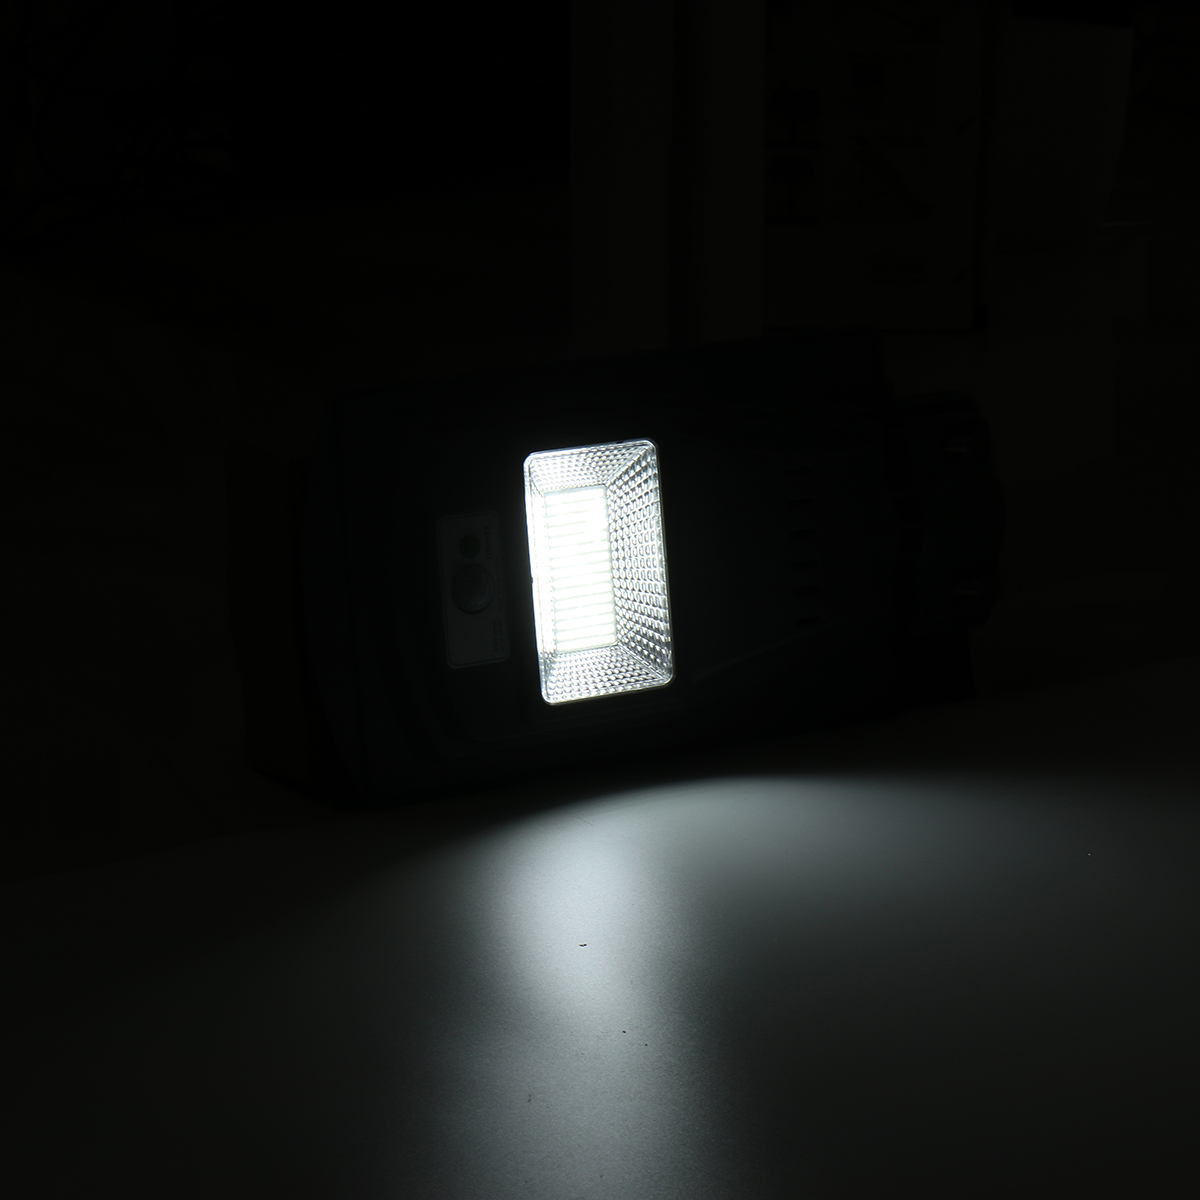 150300450LED-Solar-Light-Black-Shell-Street-Lamp-2835SMD-Waterproof-PIR-Motion-Sensor-Garden-Lightin-1695784-8